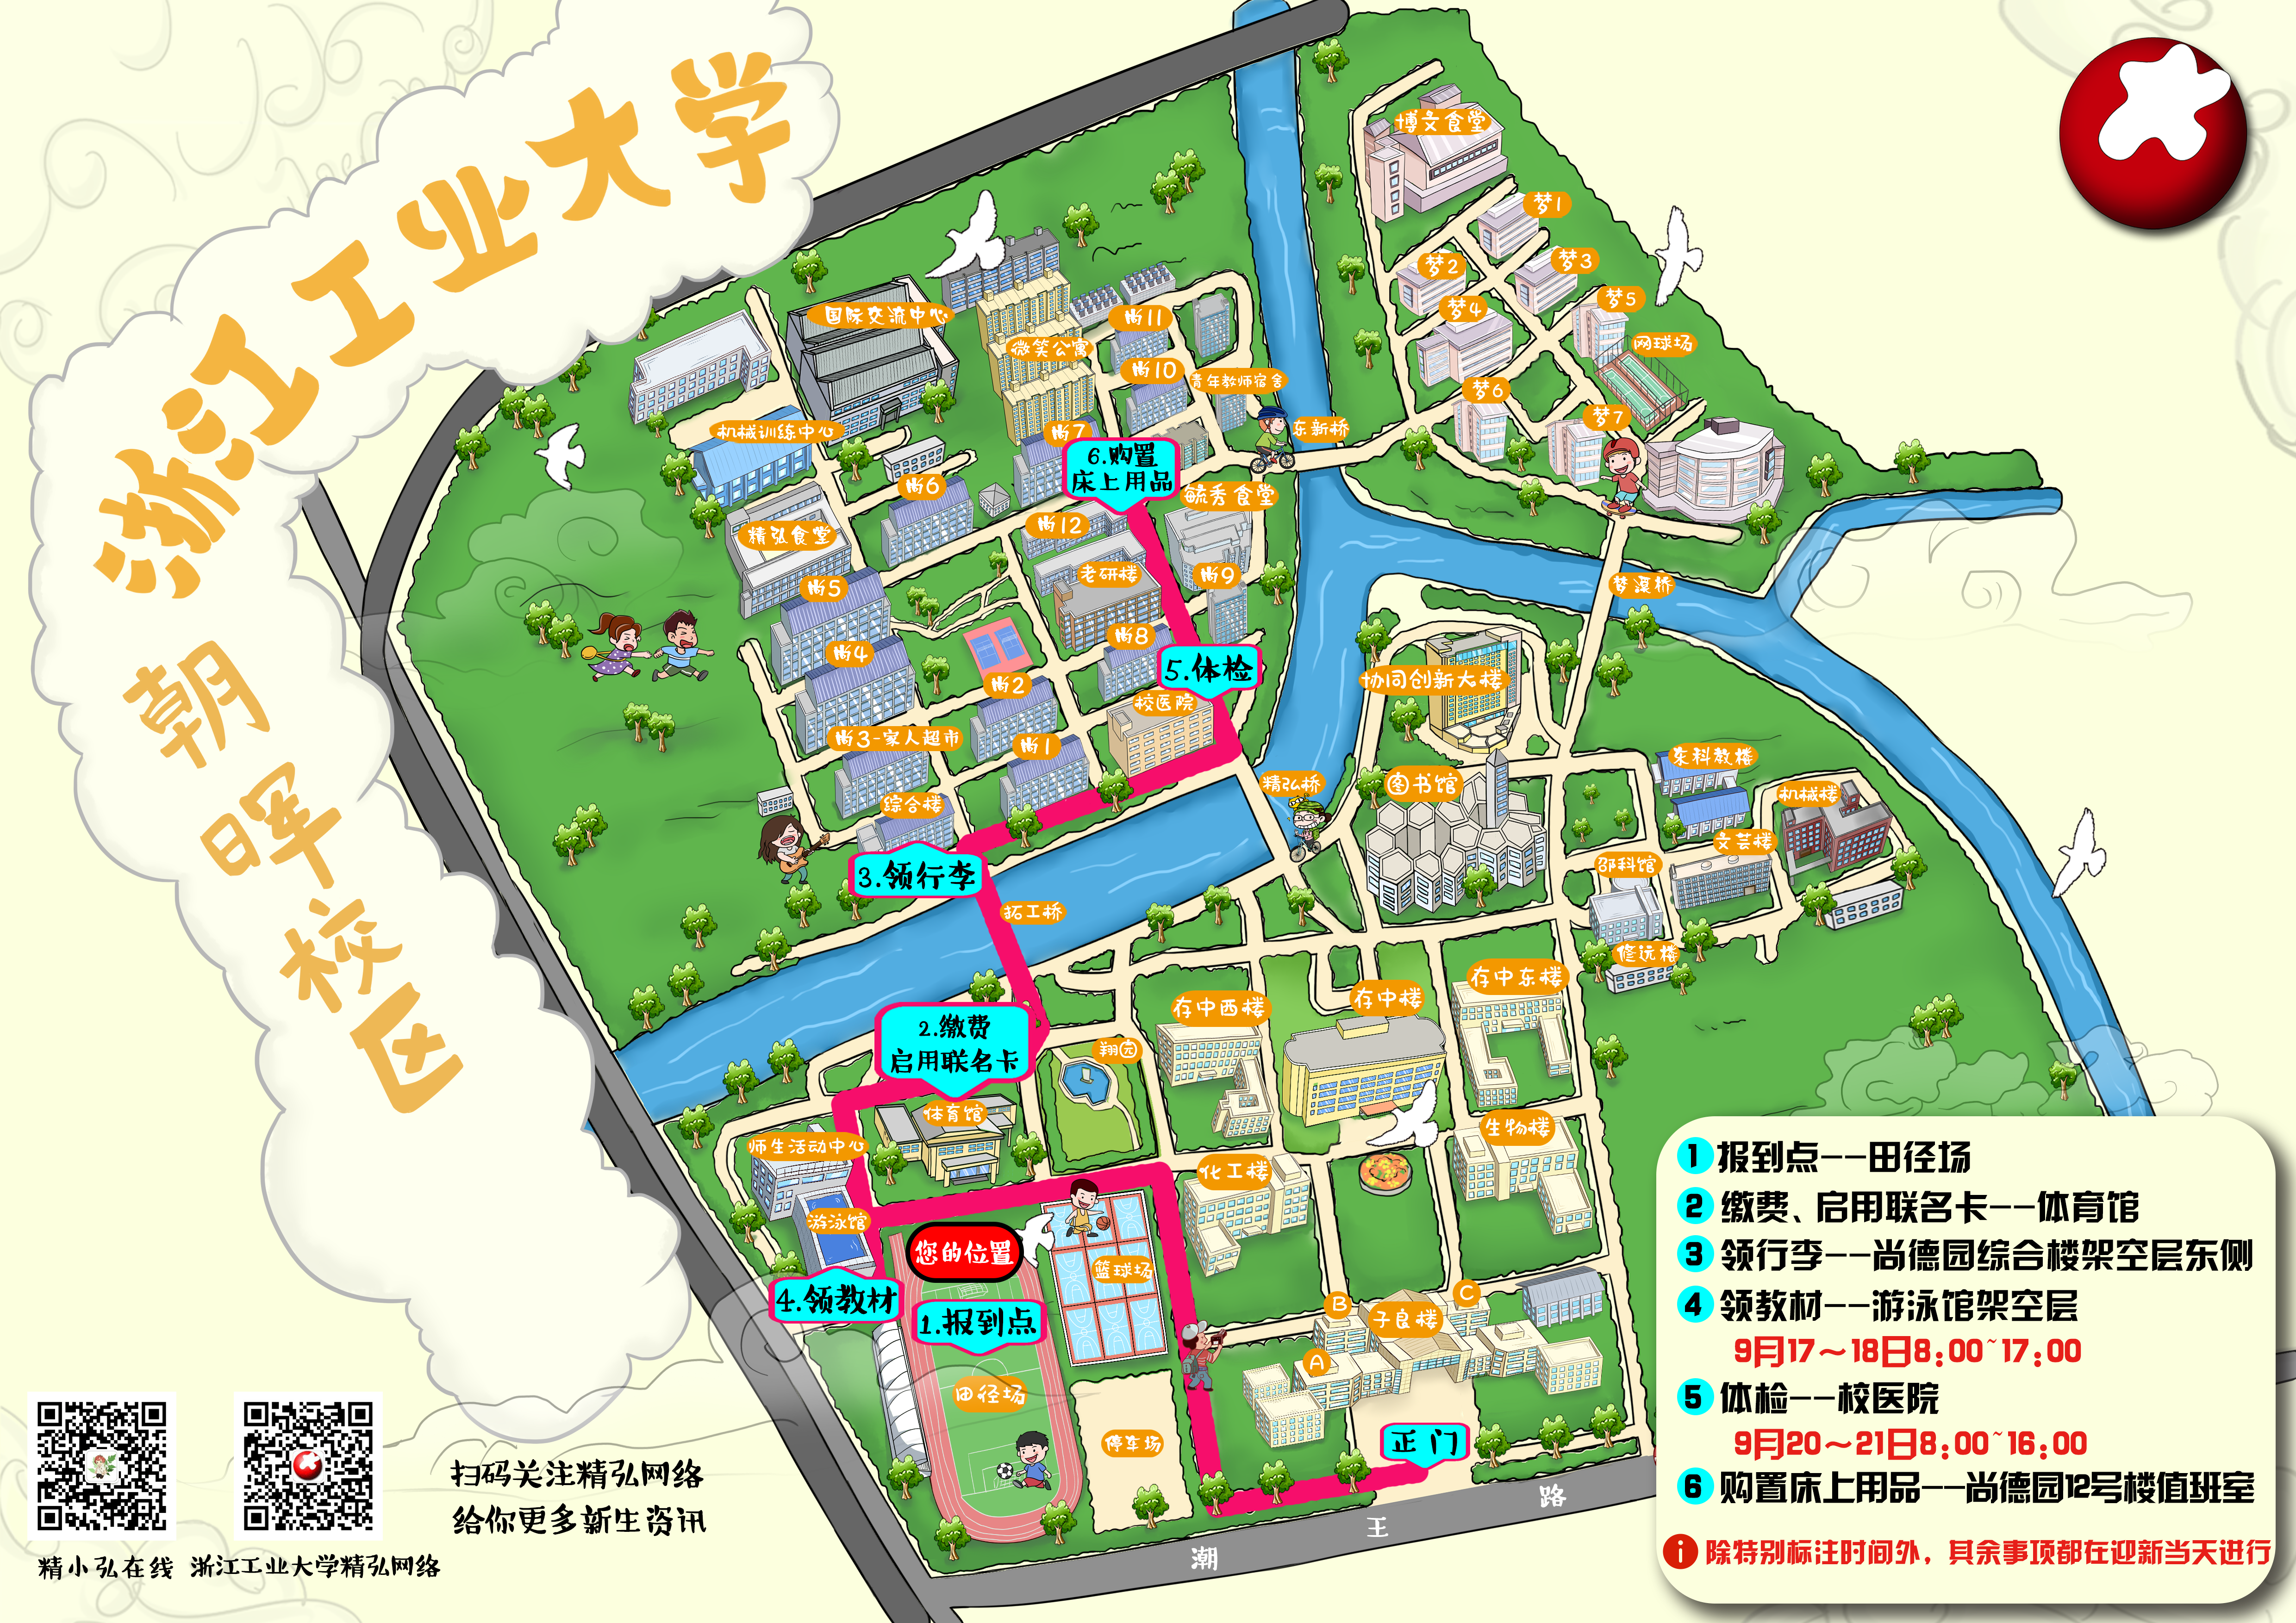 浙江工业大学地理位置图片